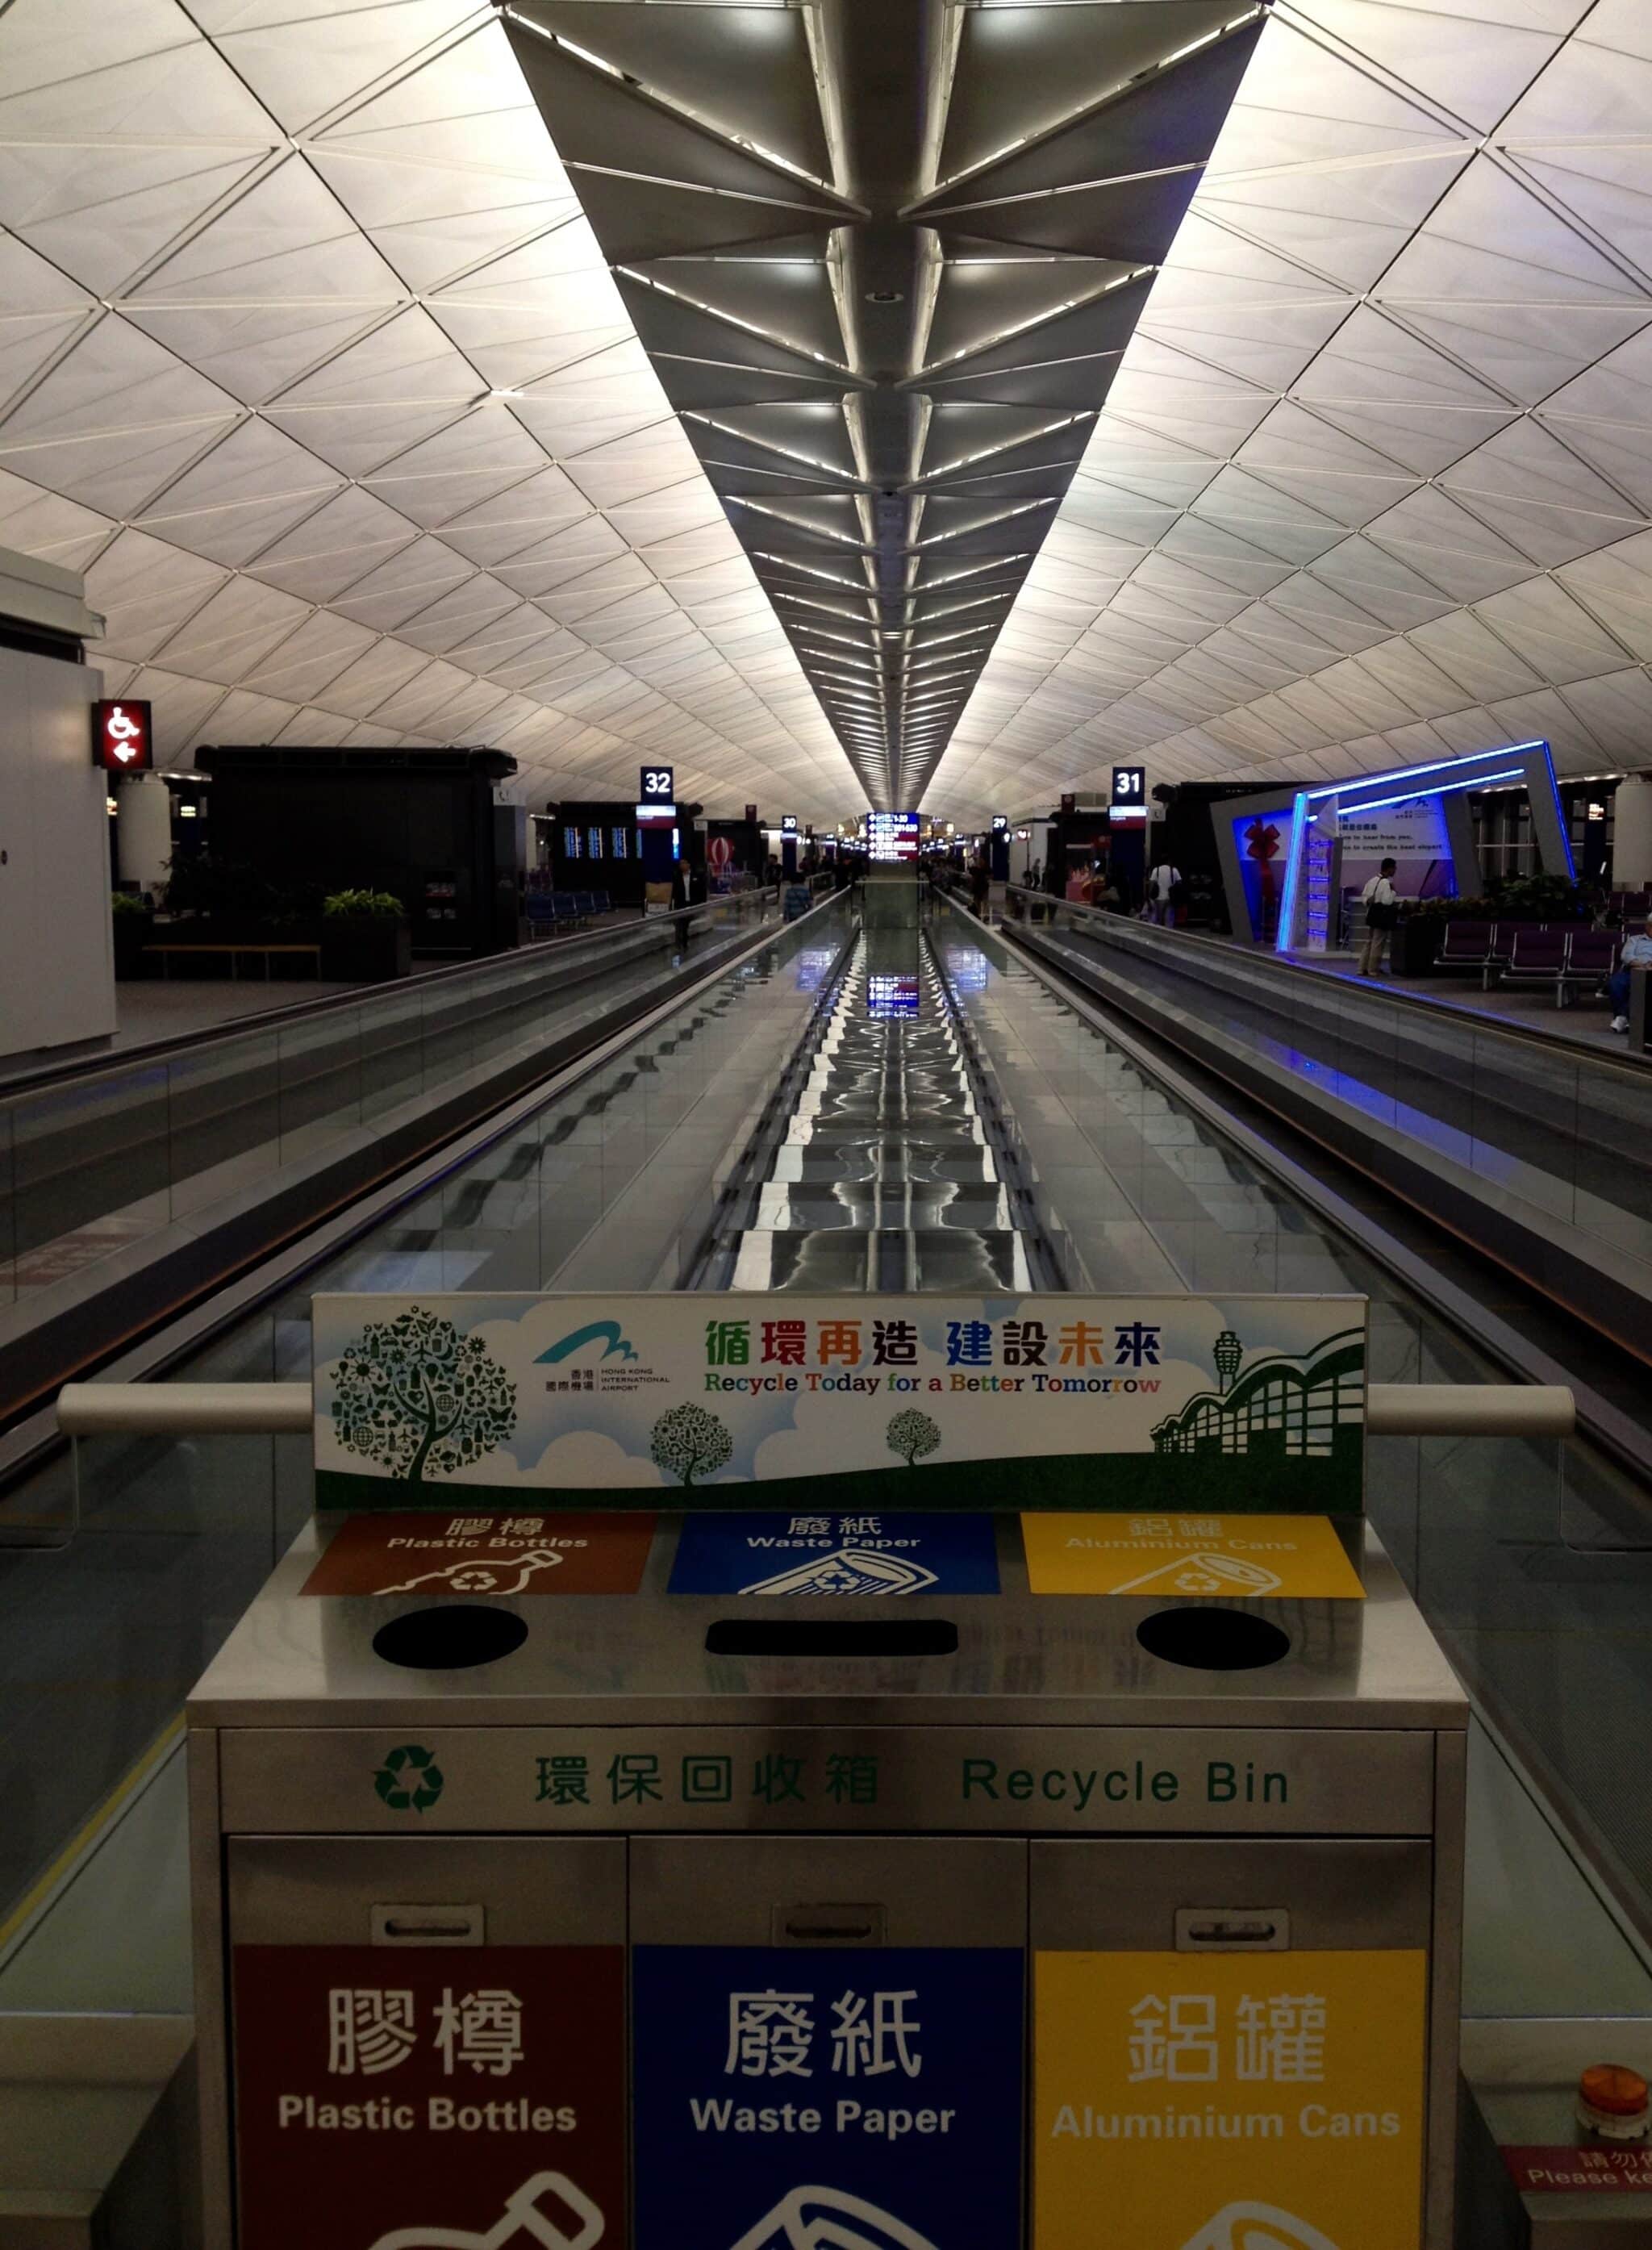 Inside Hong Kong International Airport